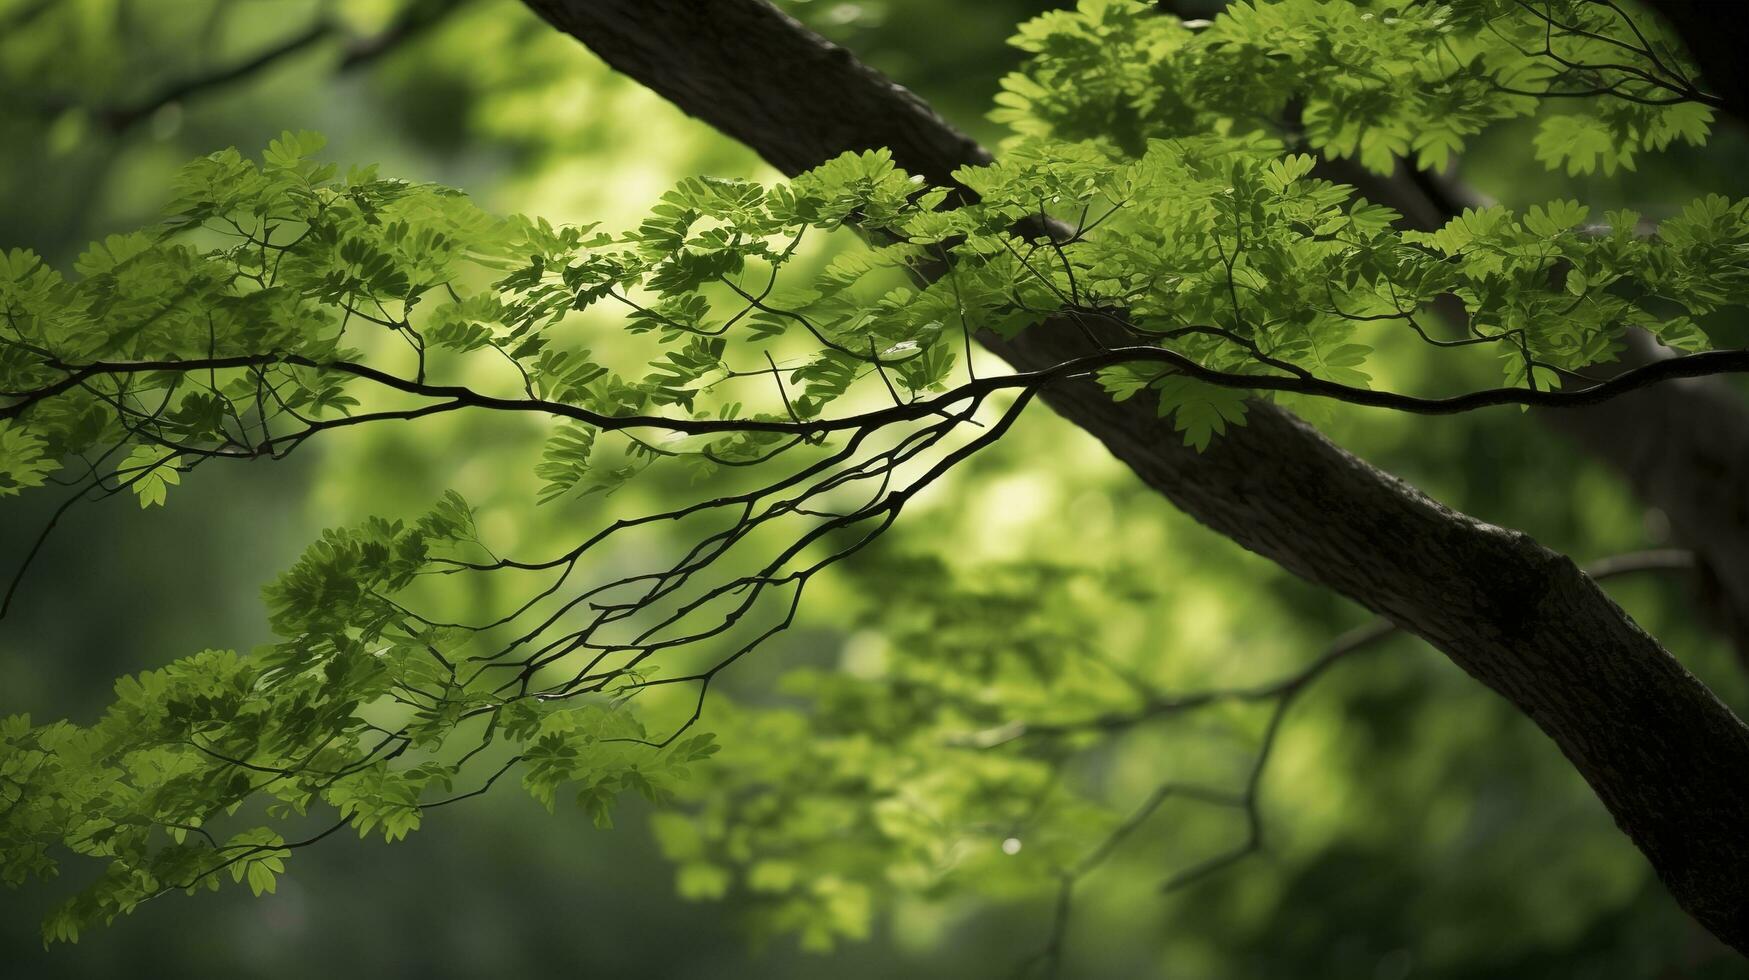 tierra día y mundo ambiente día, primavera, tropical árbol hojas y rama con hermosa verde bosque fondo, generar ai foto